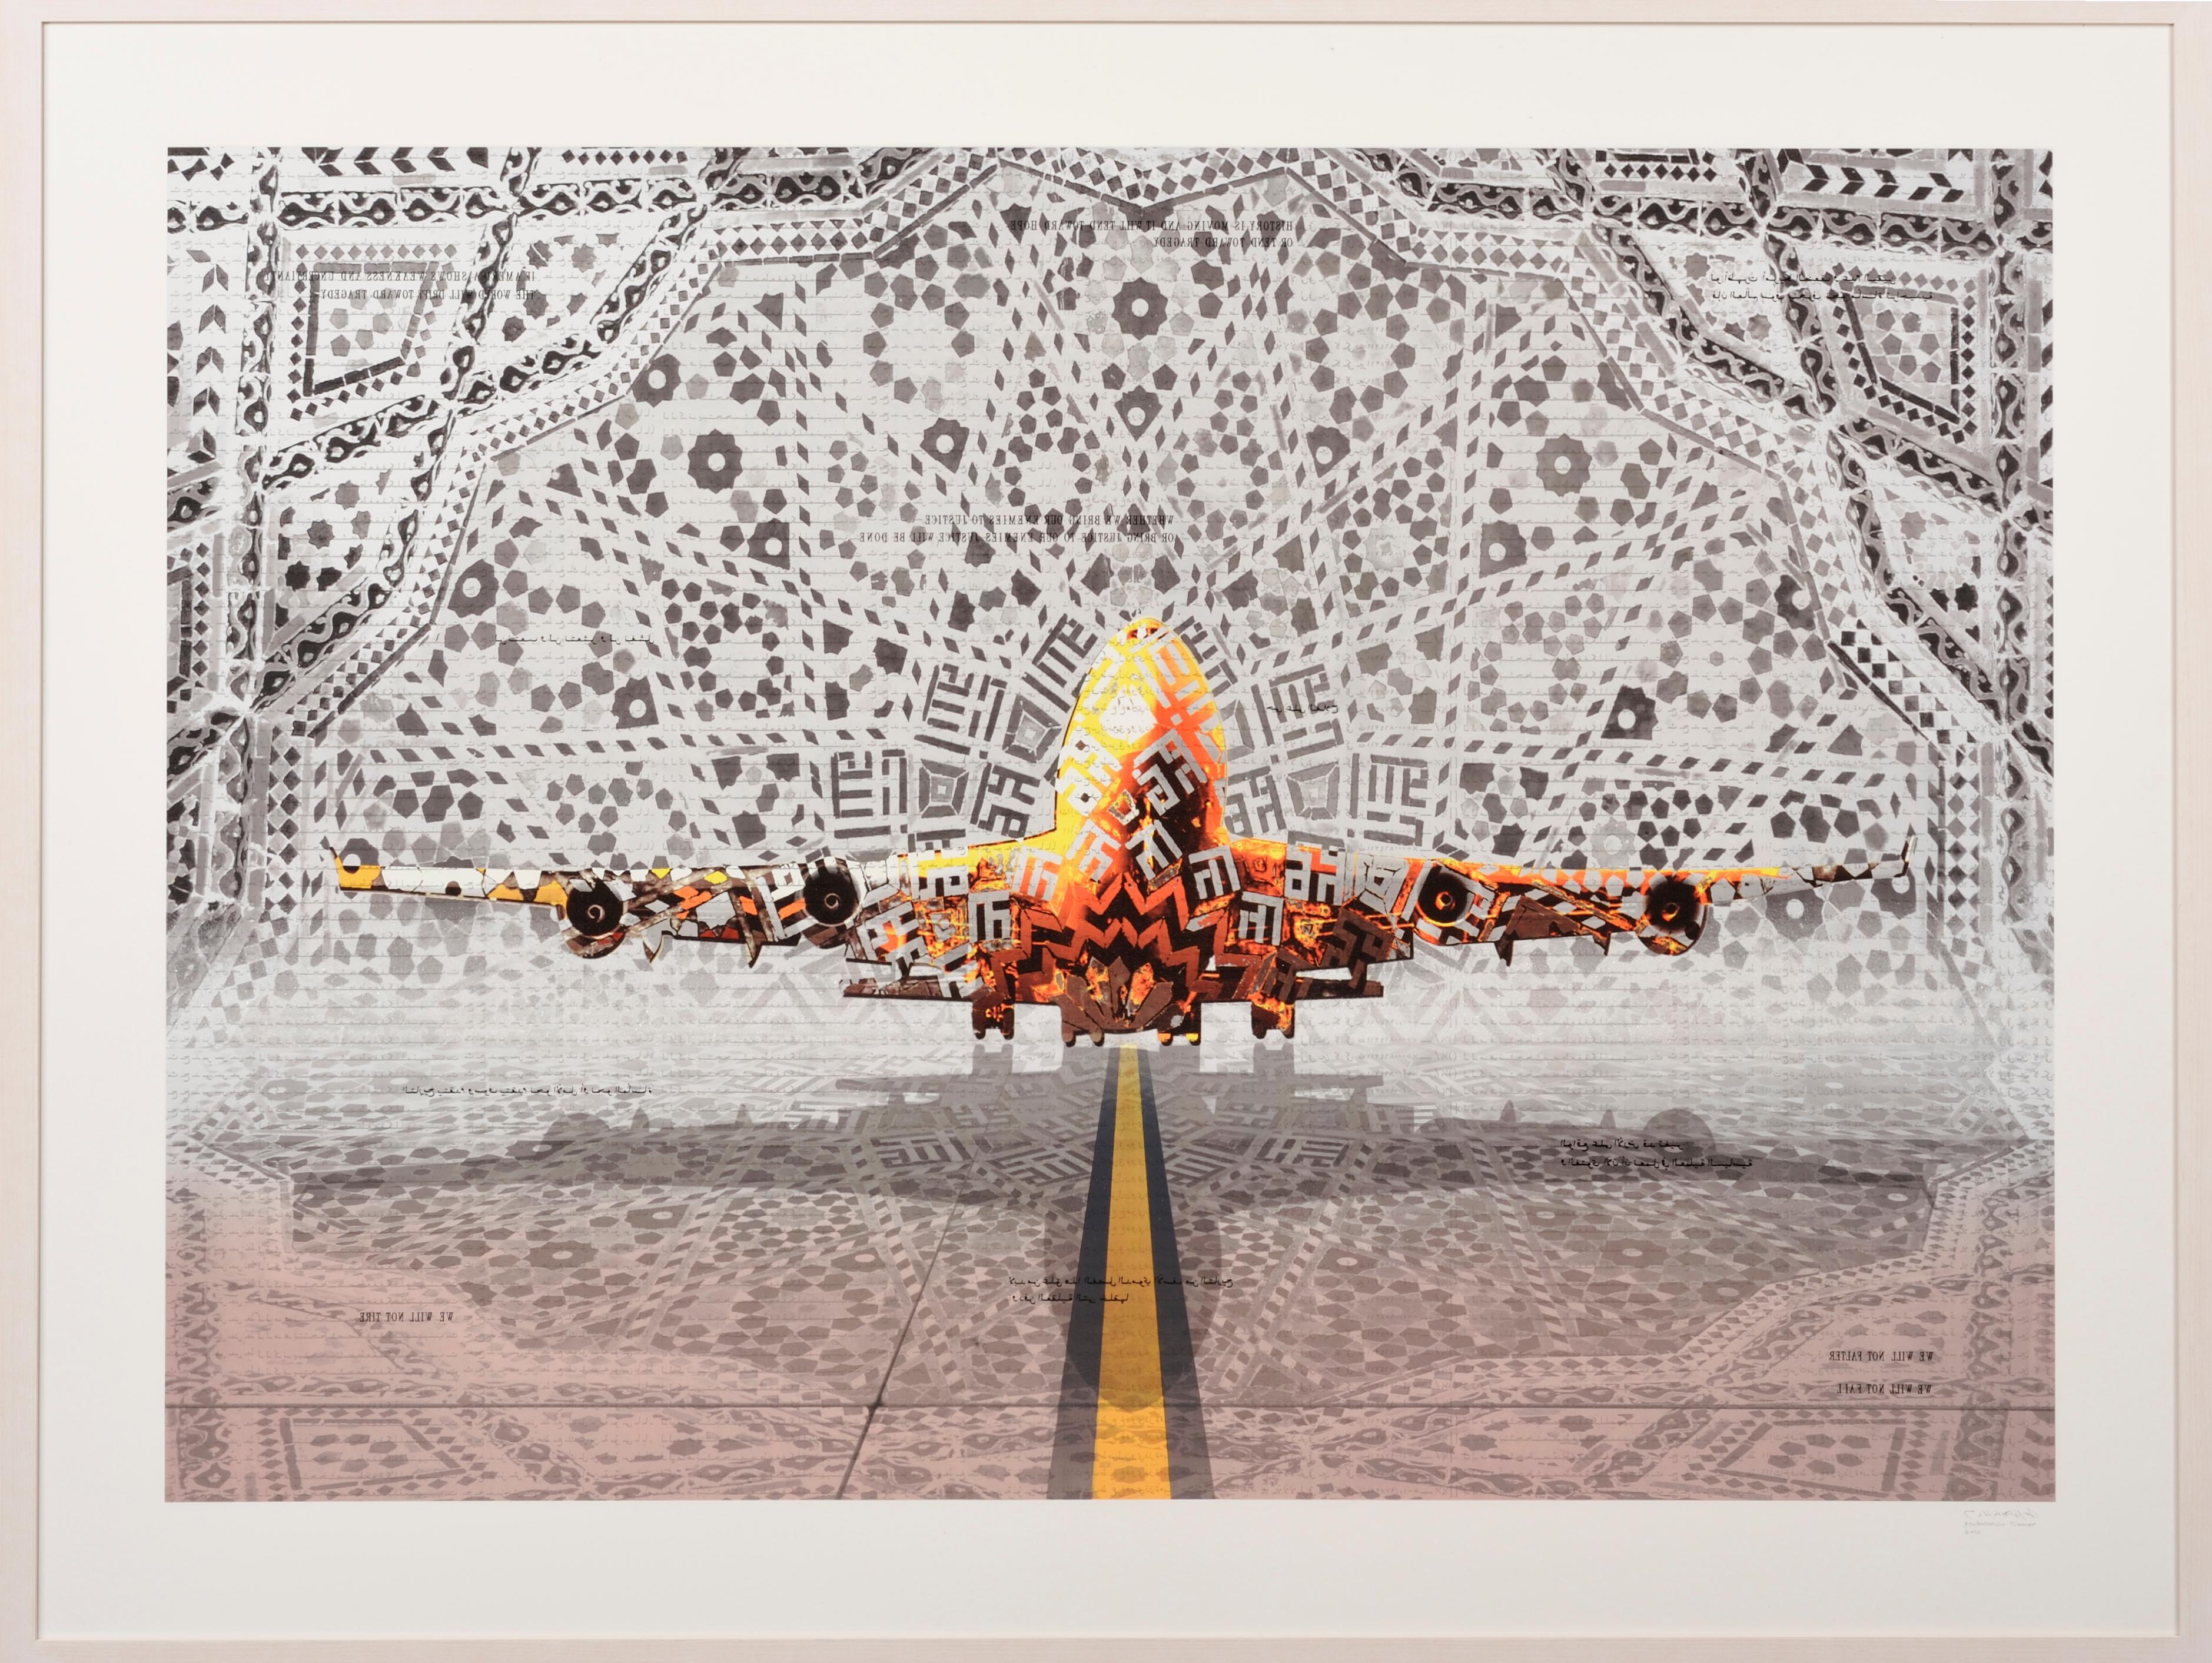 Abdulnasser Gharem
In Transit (mit Diamond Dust)
2013
Siebdruck mit Diamantstaub
137 × 182 cm (53,9 × 71,7 Zoll), ungerahmt
Signiert und datiert auf der Vorderseite
Auflage von 45
In neuwertigem Zustand und mit einem Echtheitszertifikat

BITTE